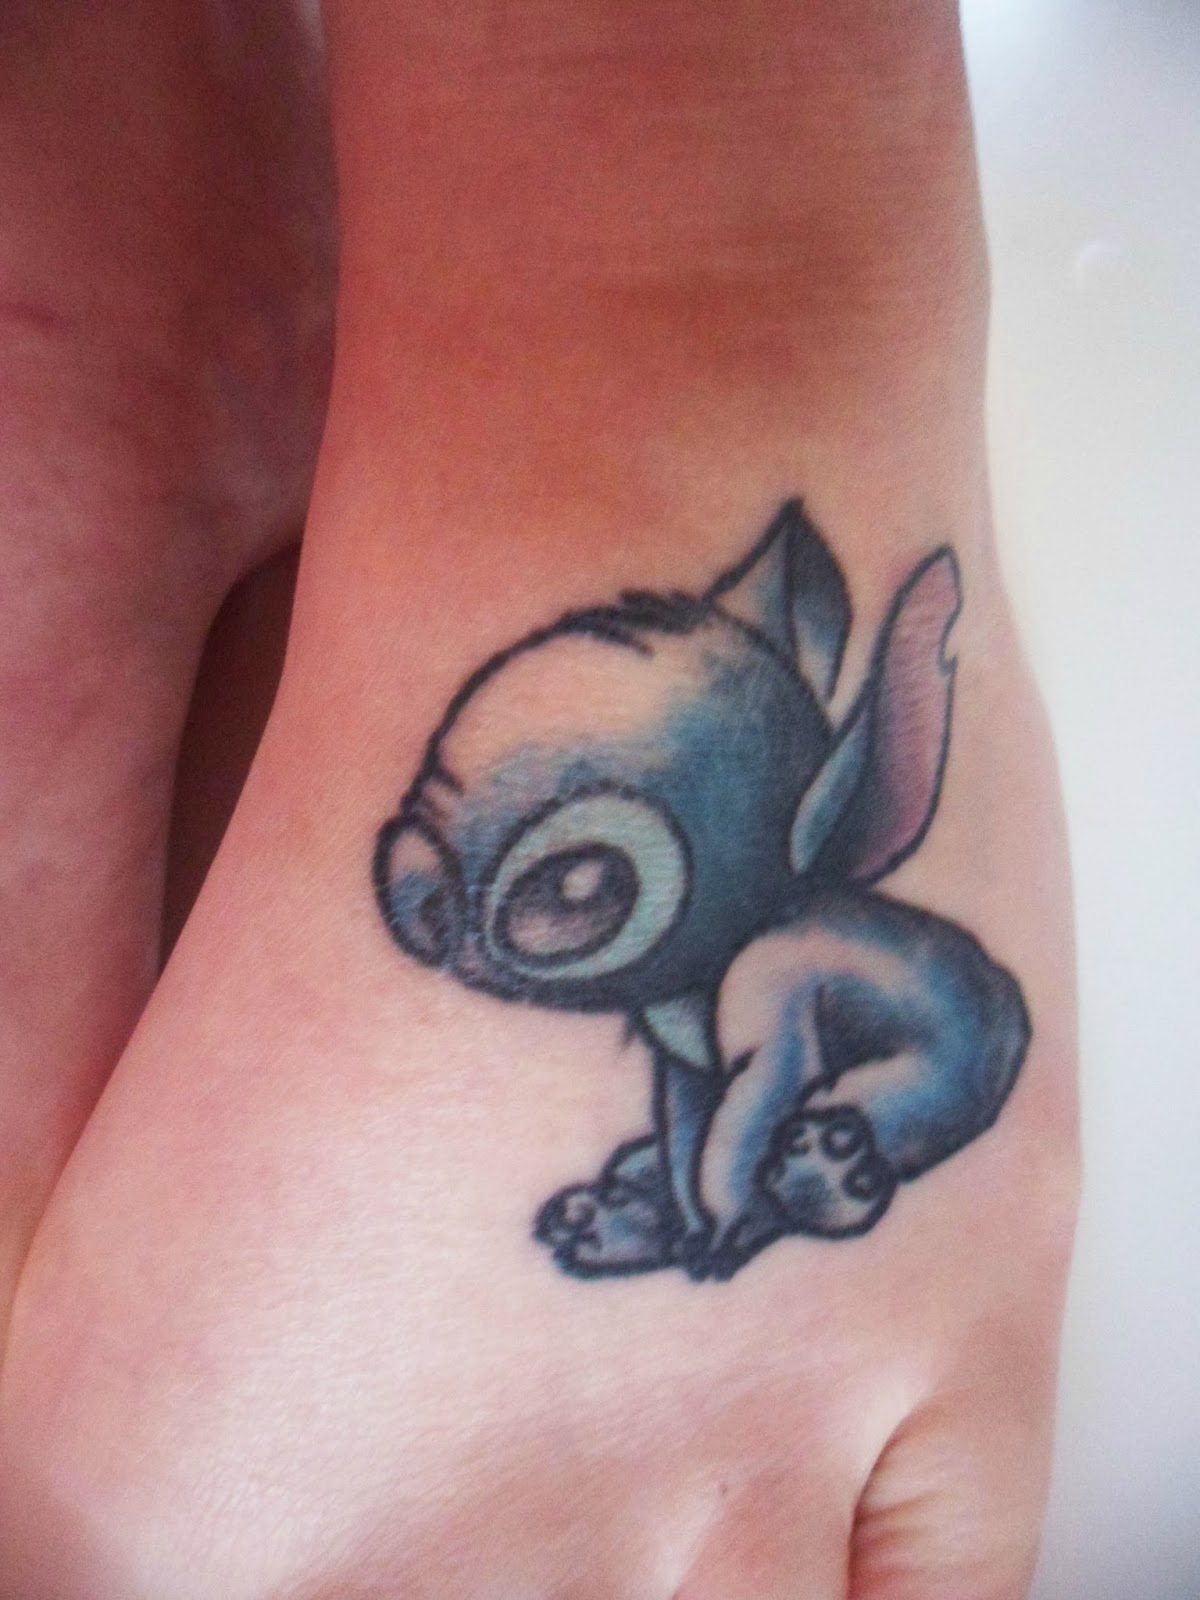 Simple Stitch foot tattoo, Lilo and Stitch tattoos.